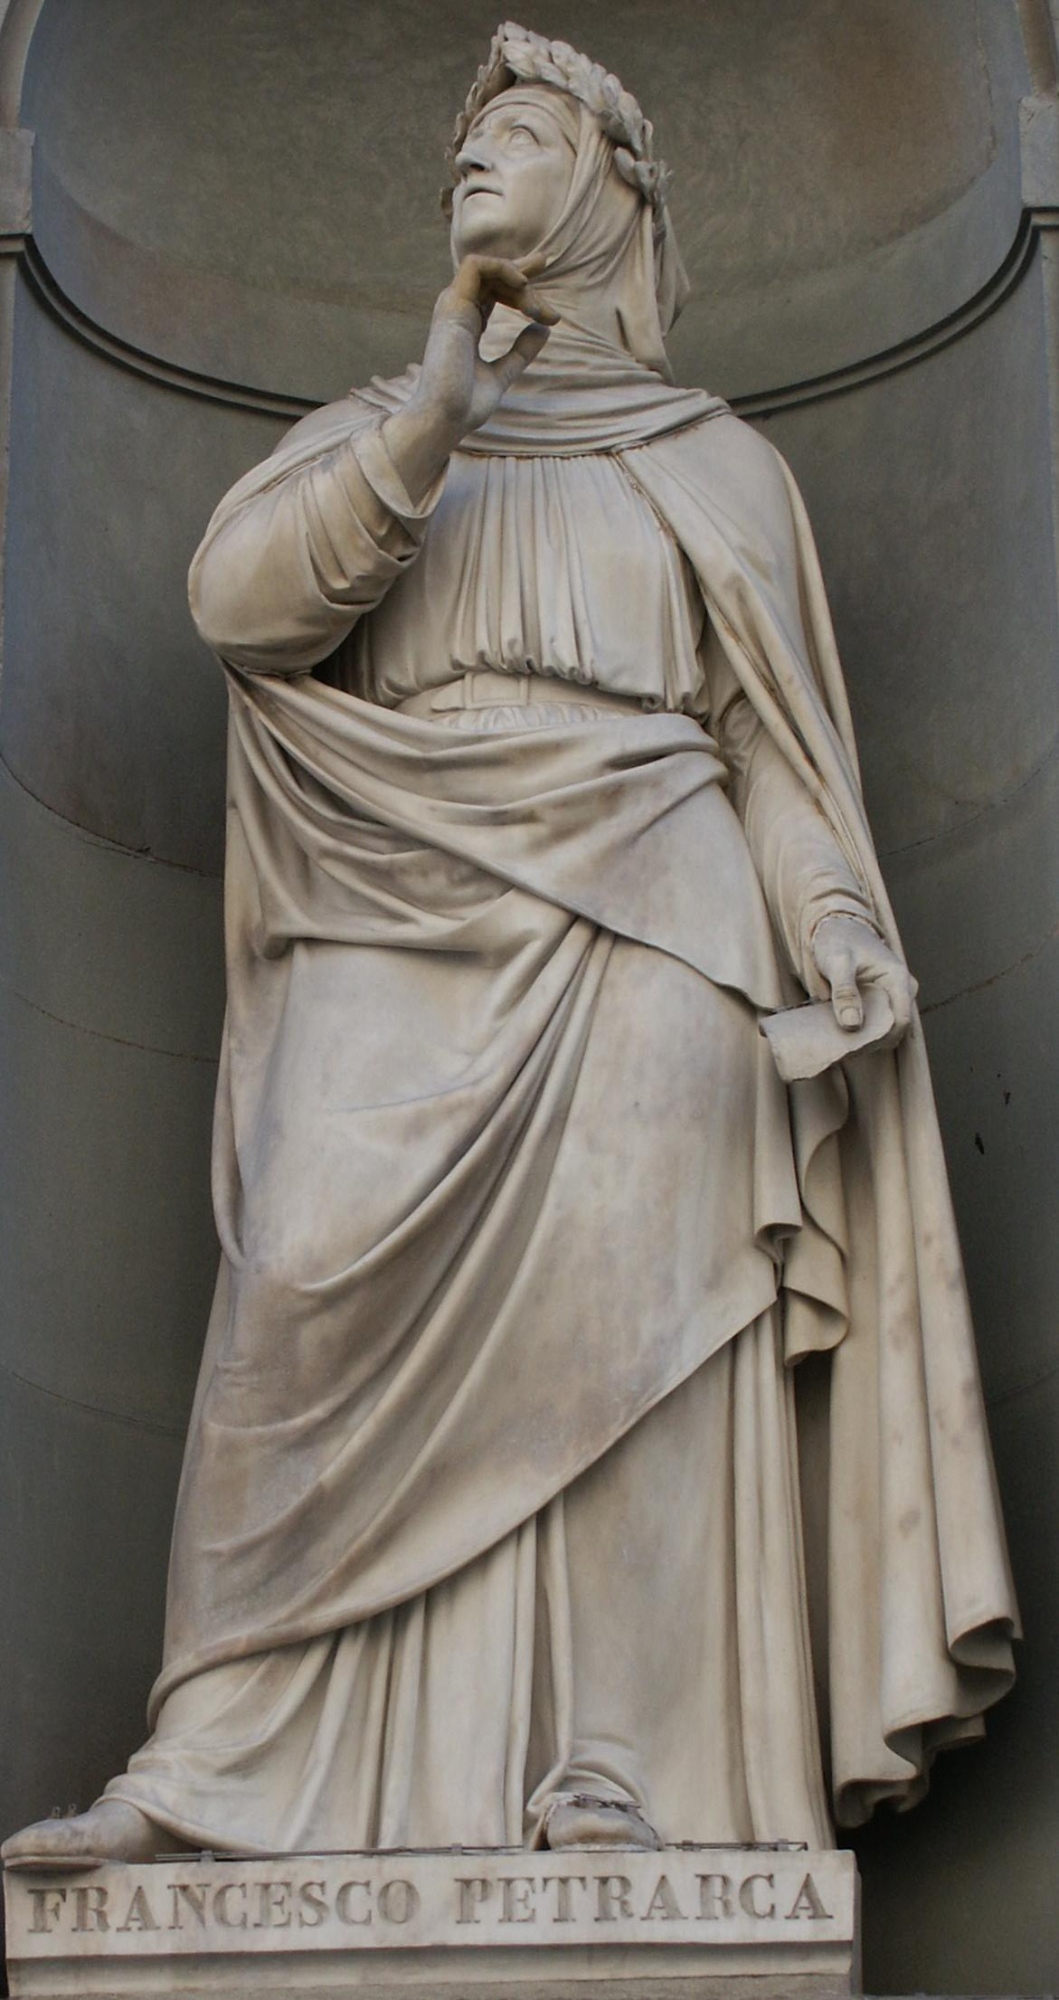 La estatua de Francesco Petrarca en la fachada del Palacio de los Uffizi